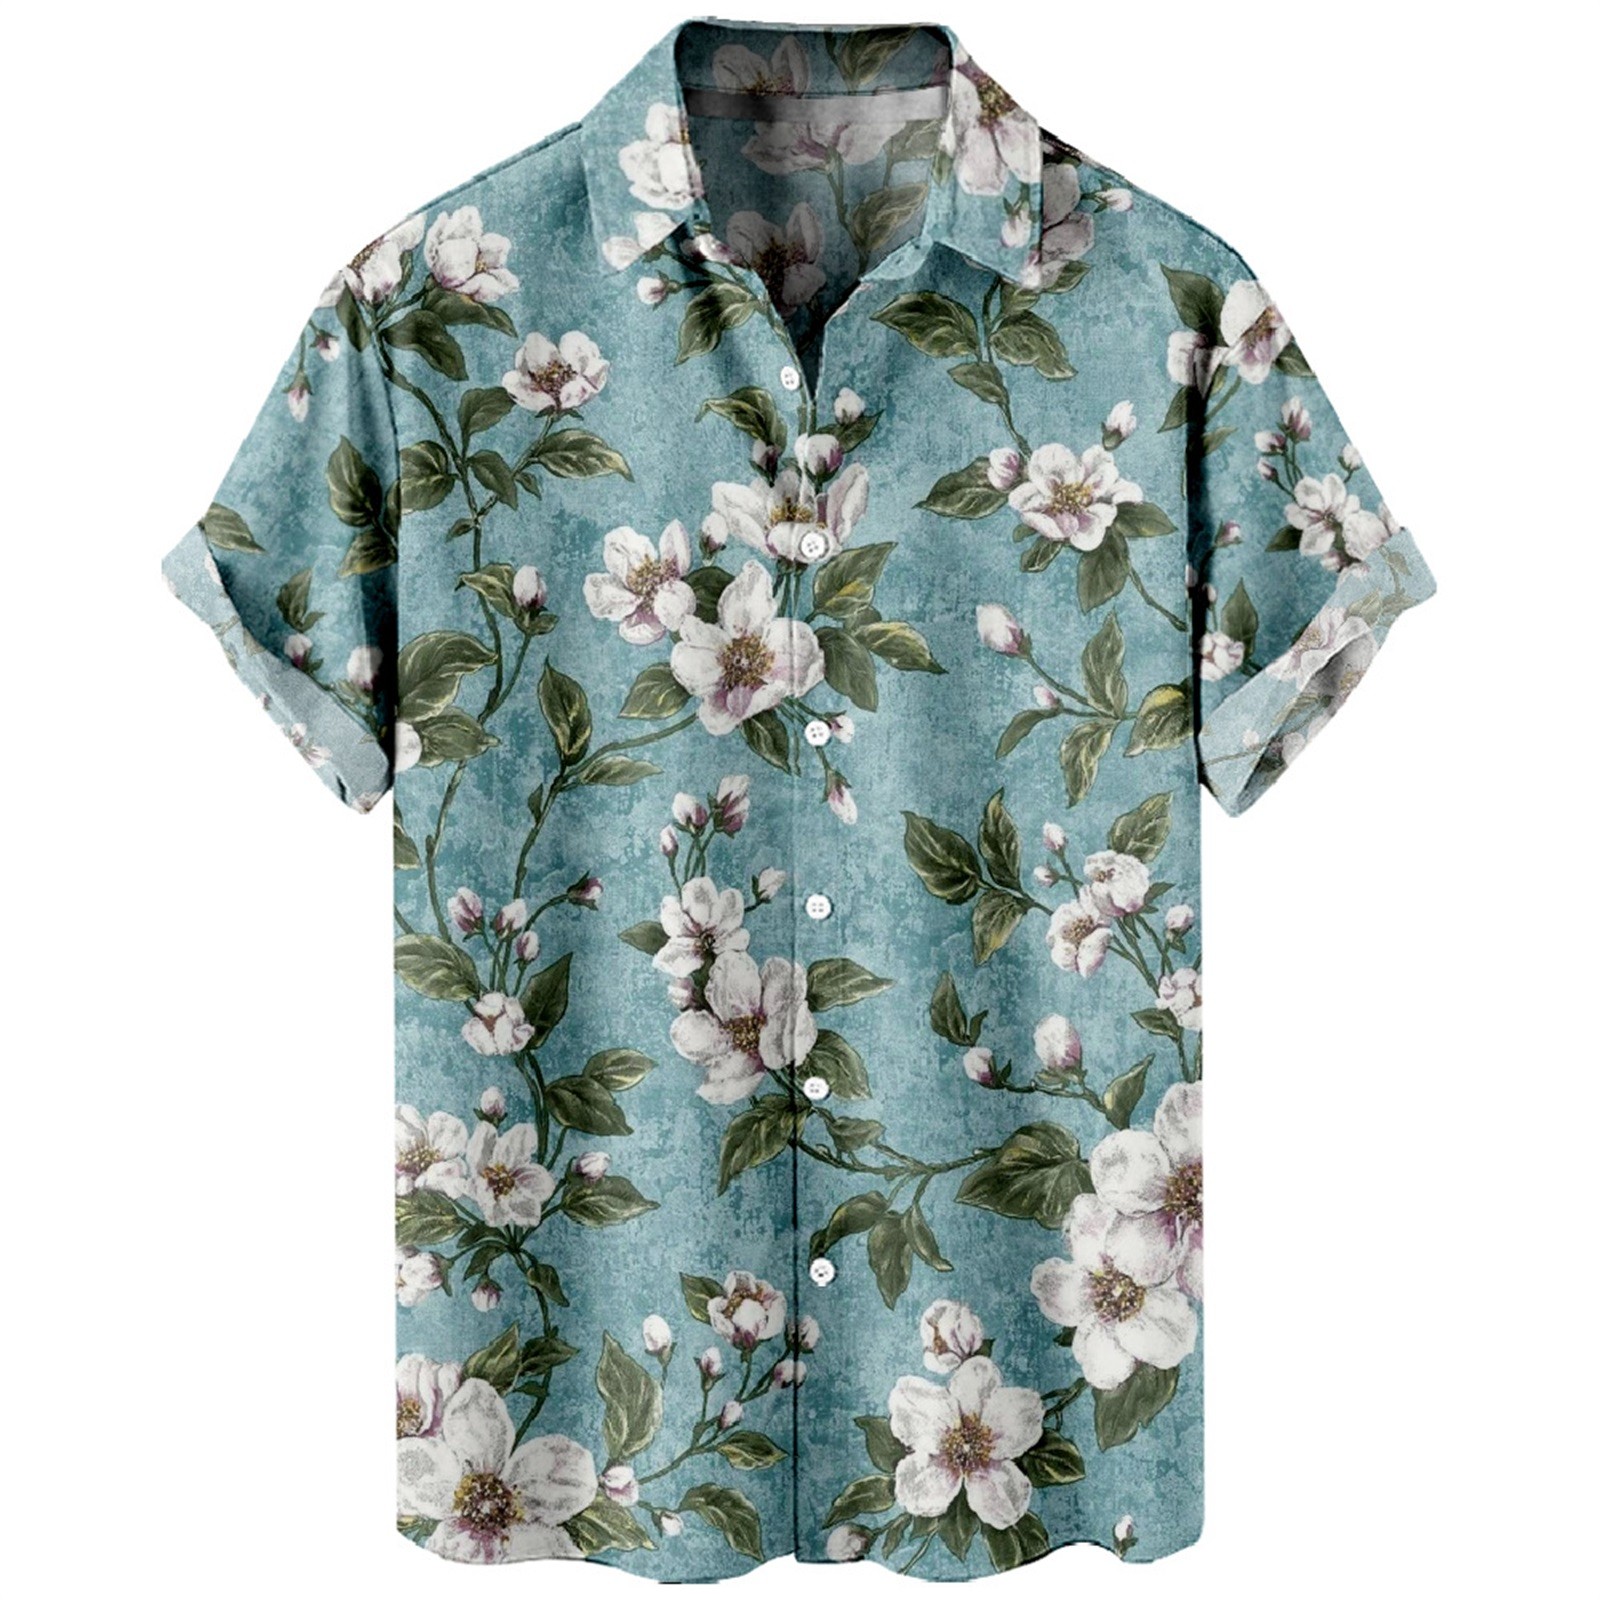 AdBFJAF Dress Shirts for Men Regular Fit Pocket Floral Print 3D Digital ...